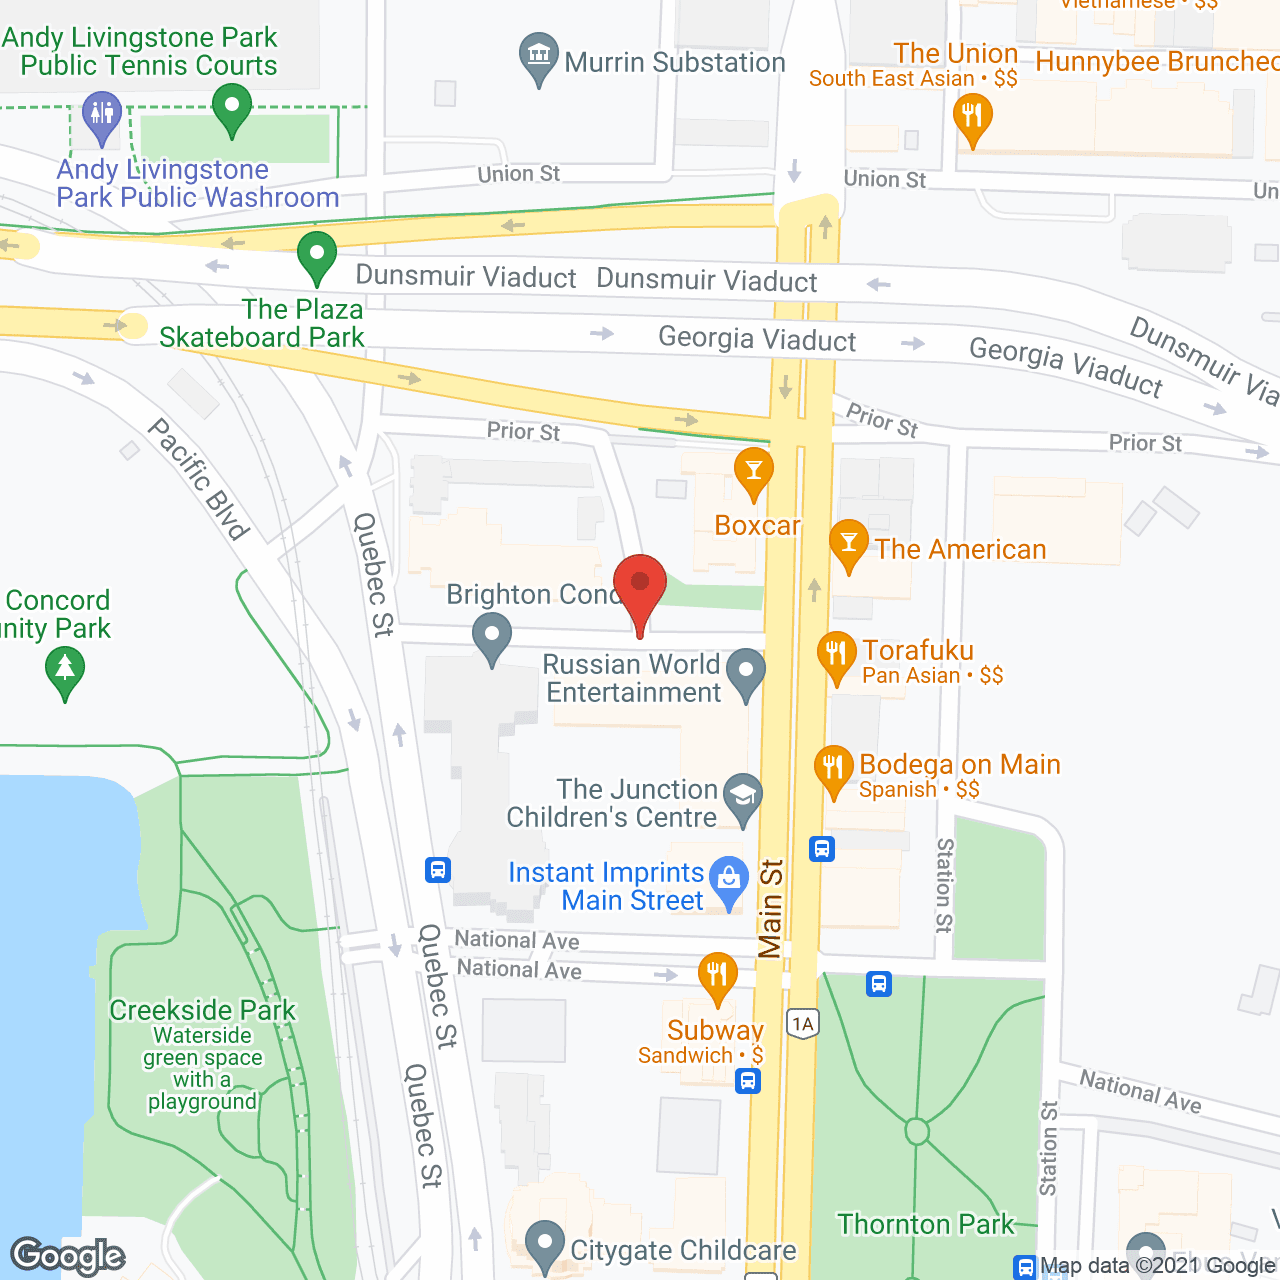 City Gate Co-Op in google map